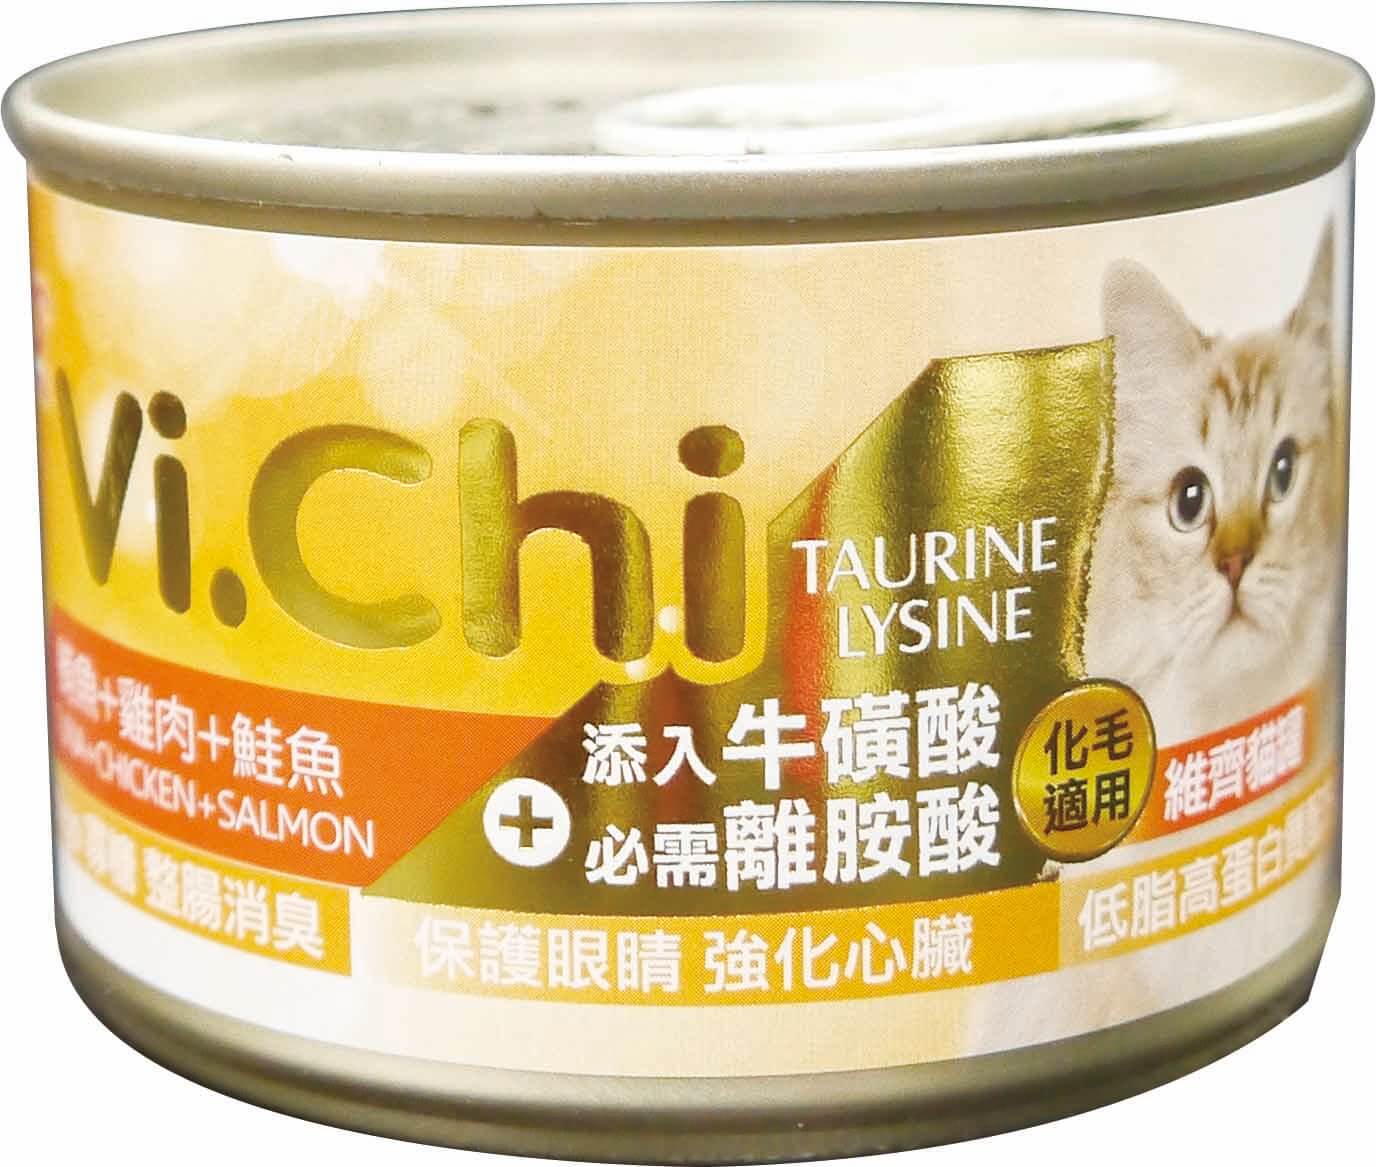 維齊貓罐160G-鮪魚+雞肉+鮭魚
Vi.Chi cat can-tuna+chicken+salmon